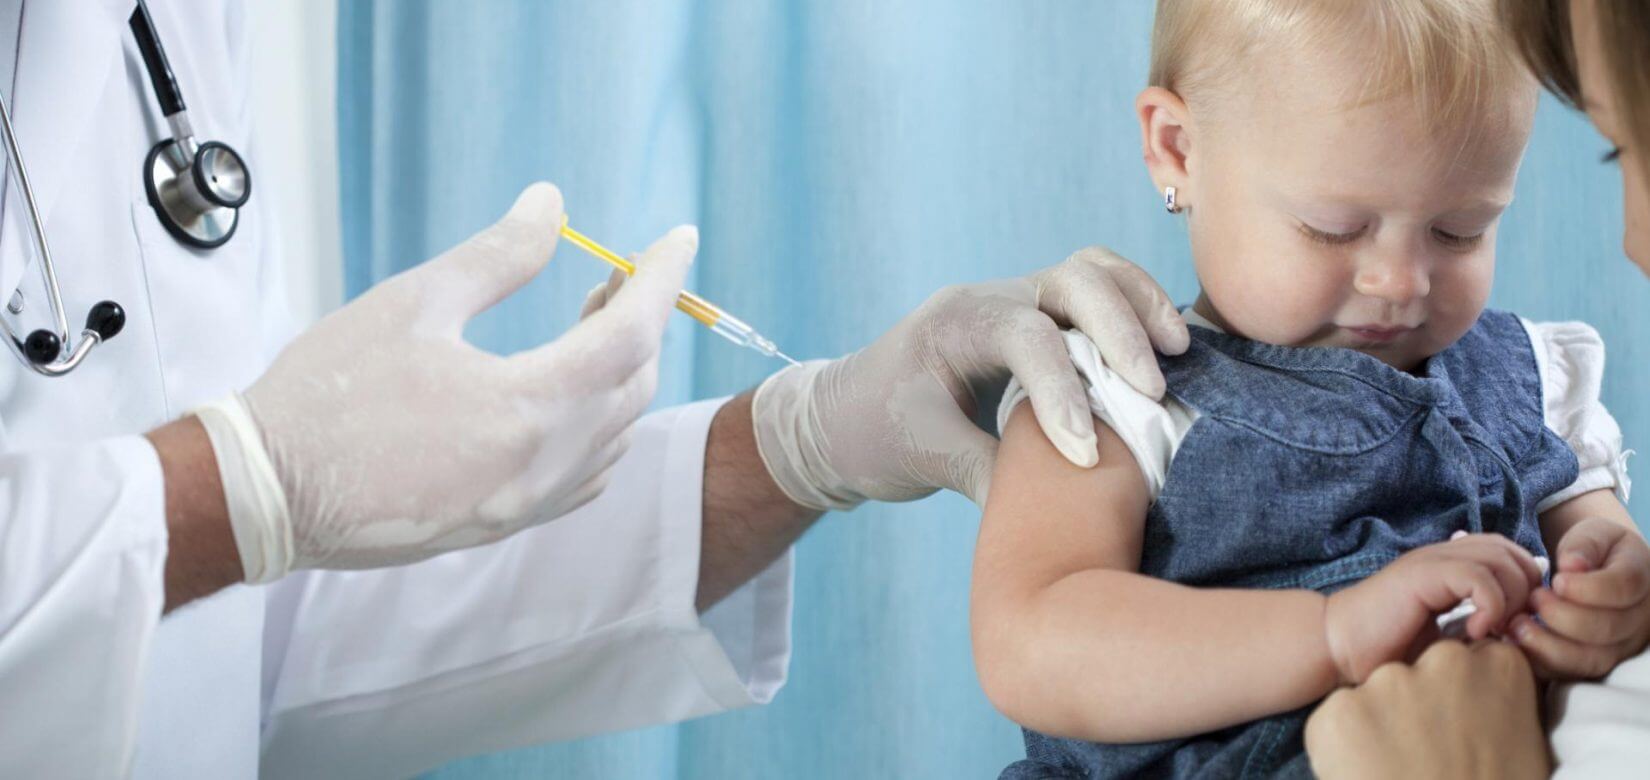 Κορονοϊός: Τι πρέπει να κάνετε αν το παιδί σας έχει συνάχι πριν τον εμβολιασμό - Οι παιδίατροι συμβουλεύουν